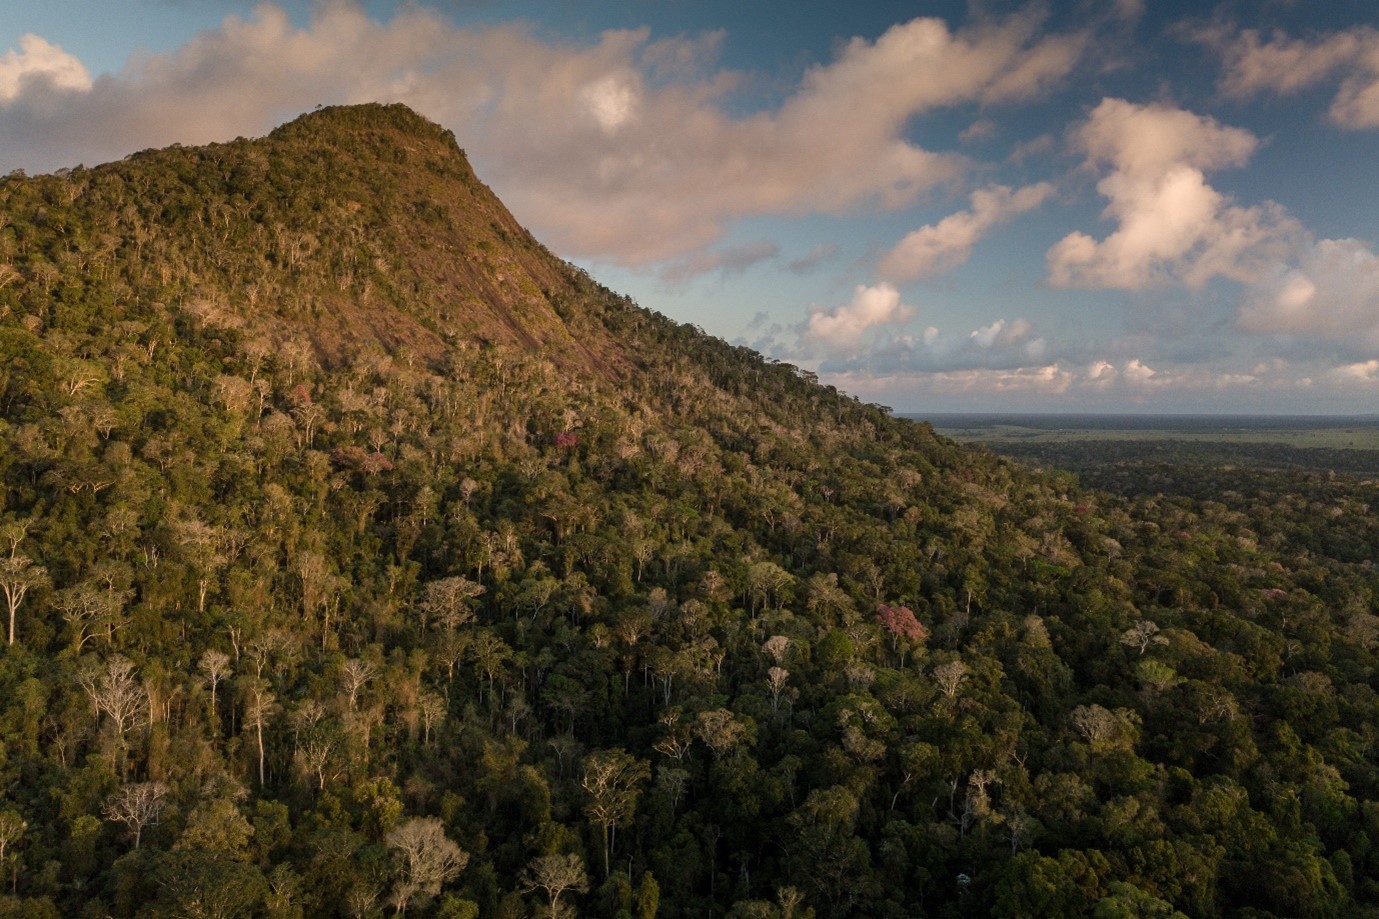 Vista do Monte Pascoal, na Mata Atlântica do litoral da Bahia. O desmatamento ameaça as florestas tropicais do Brasil, reduzindo sua capacidade de capturar carbono e piorando o problema mundial de emissões de carbono. (Foto: Flavio Forner/Conservação Internacional)